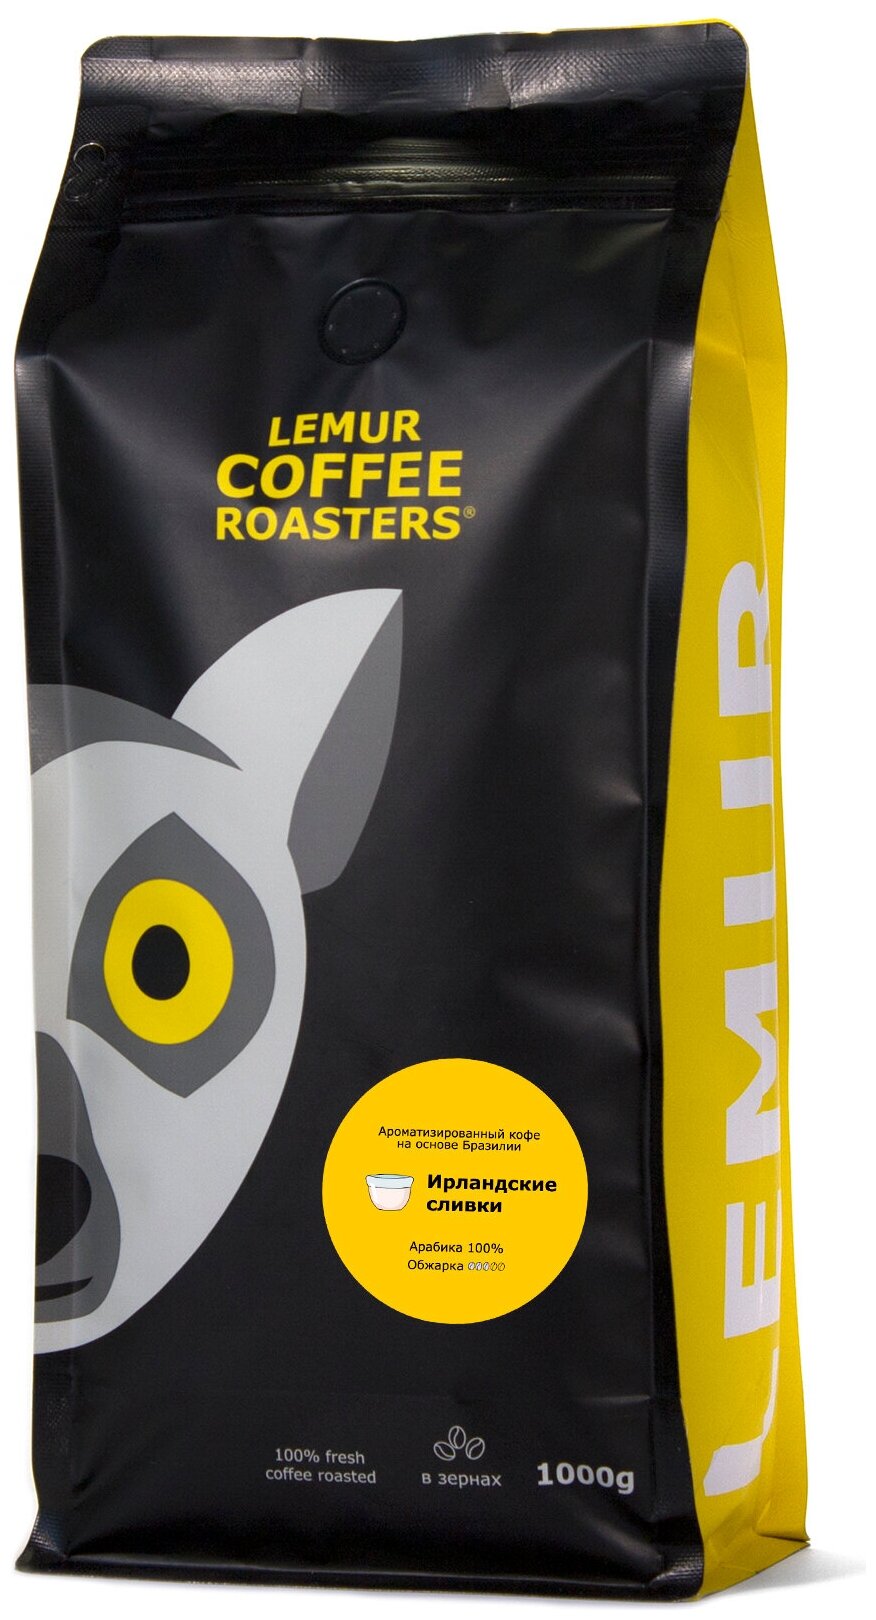 Ароматизированный кофе в зернах Ирландские сливки Lemur Coffee Roasters, 1кг - фотография № 1